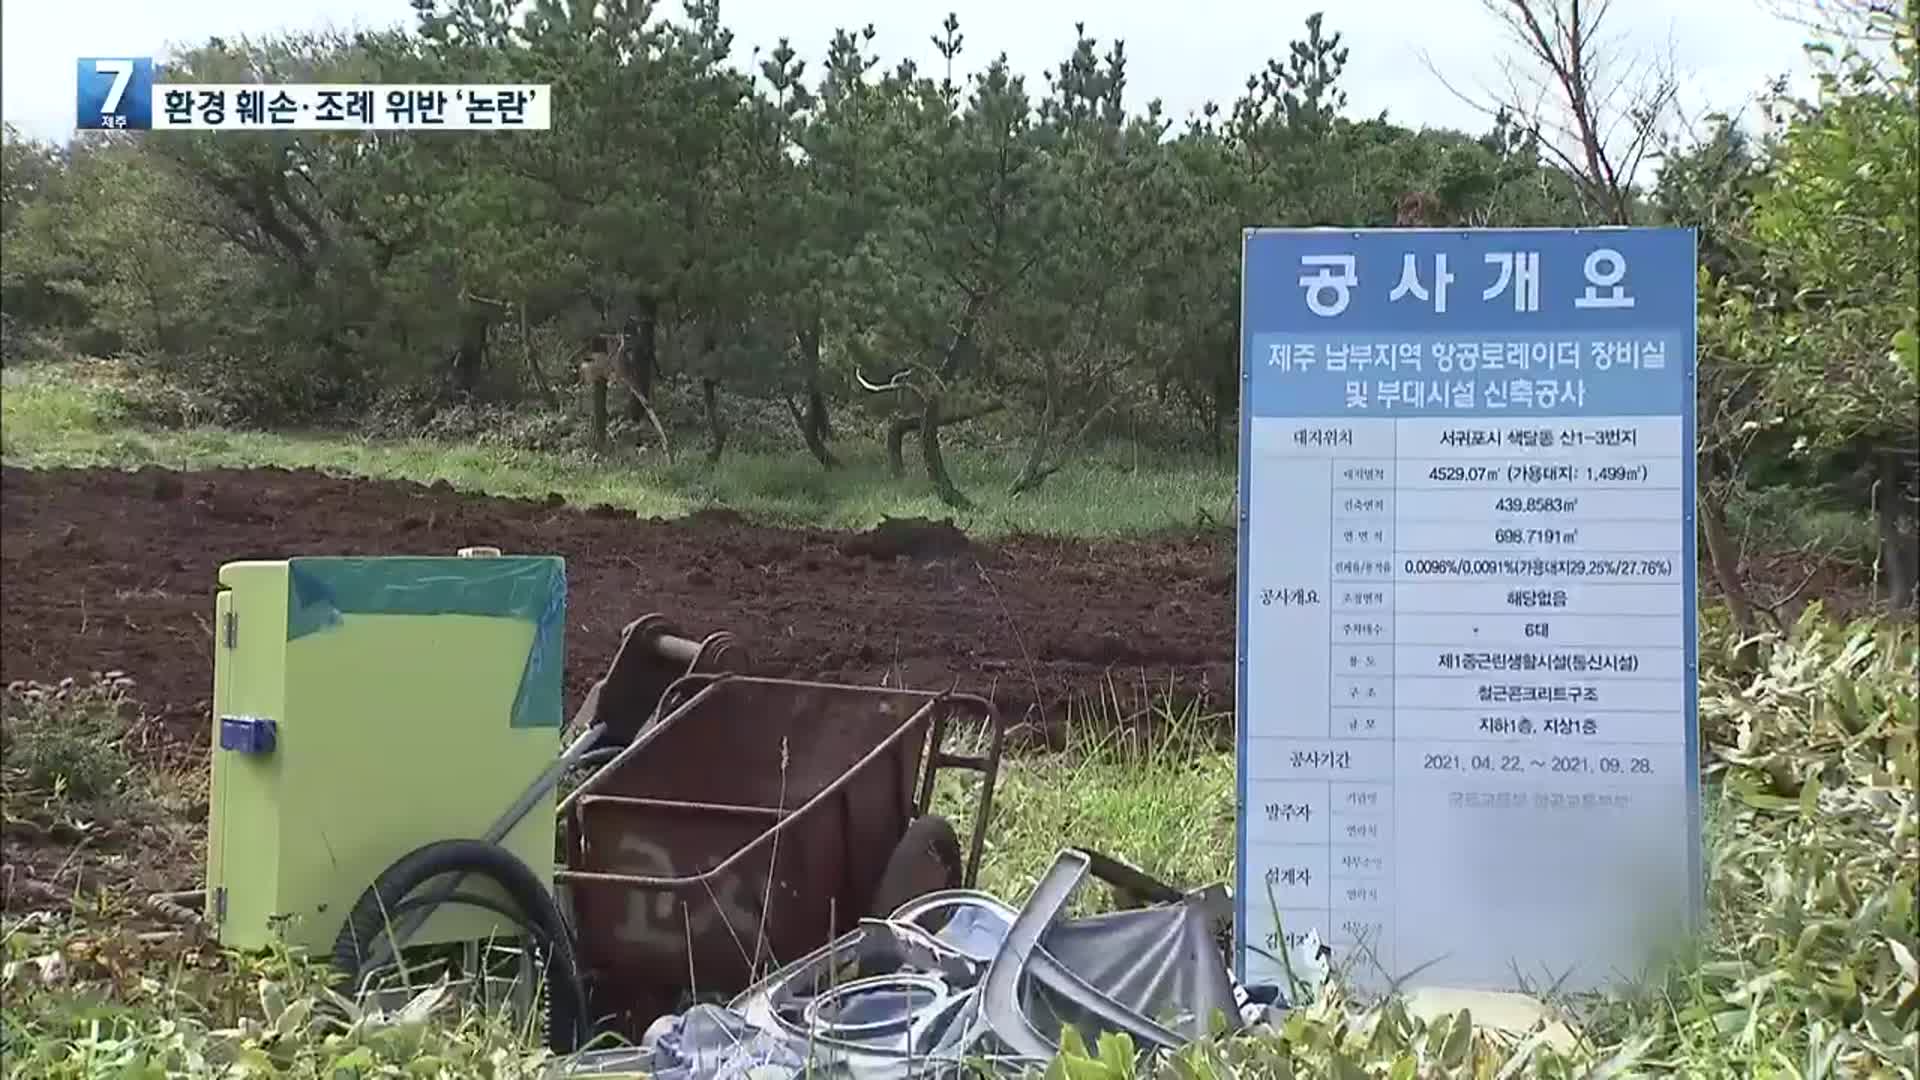 한라산 국립공원 오름 정상에 레이더 시설 논란